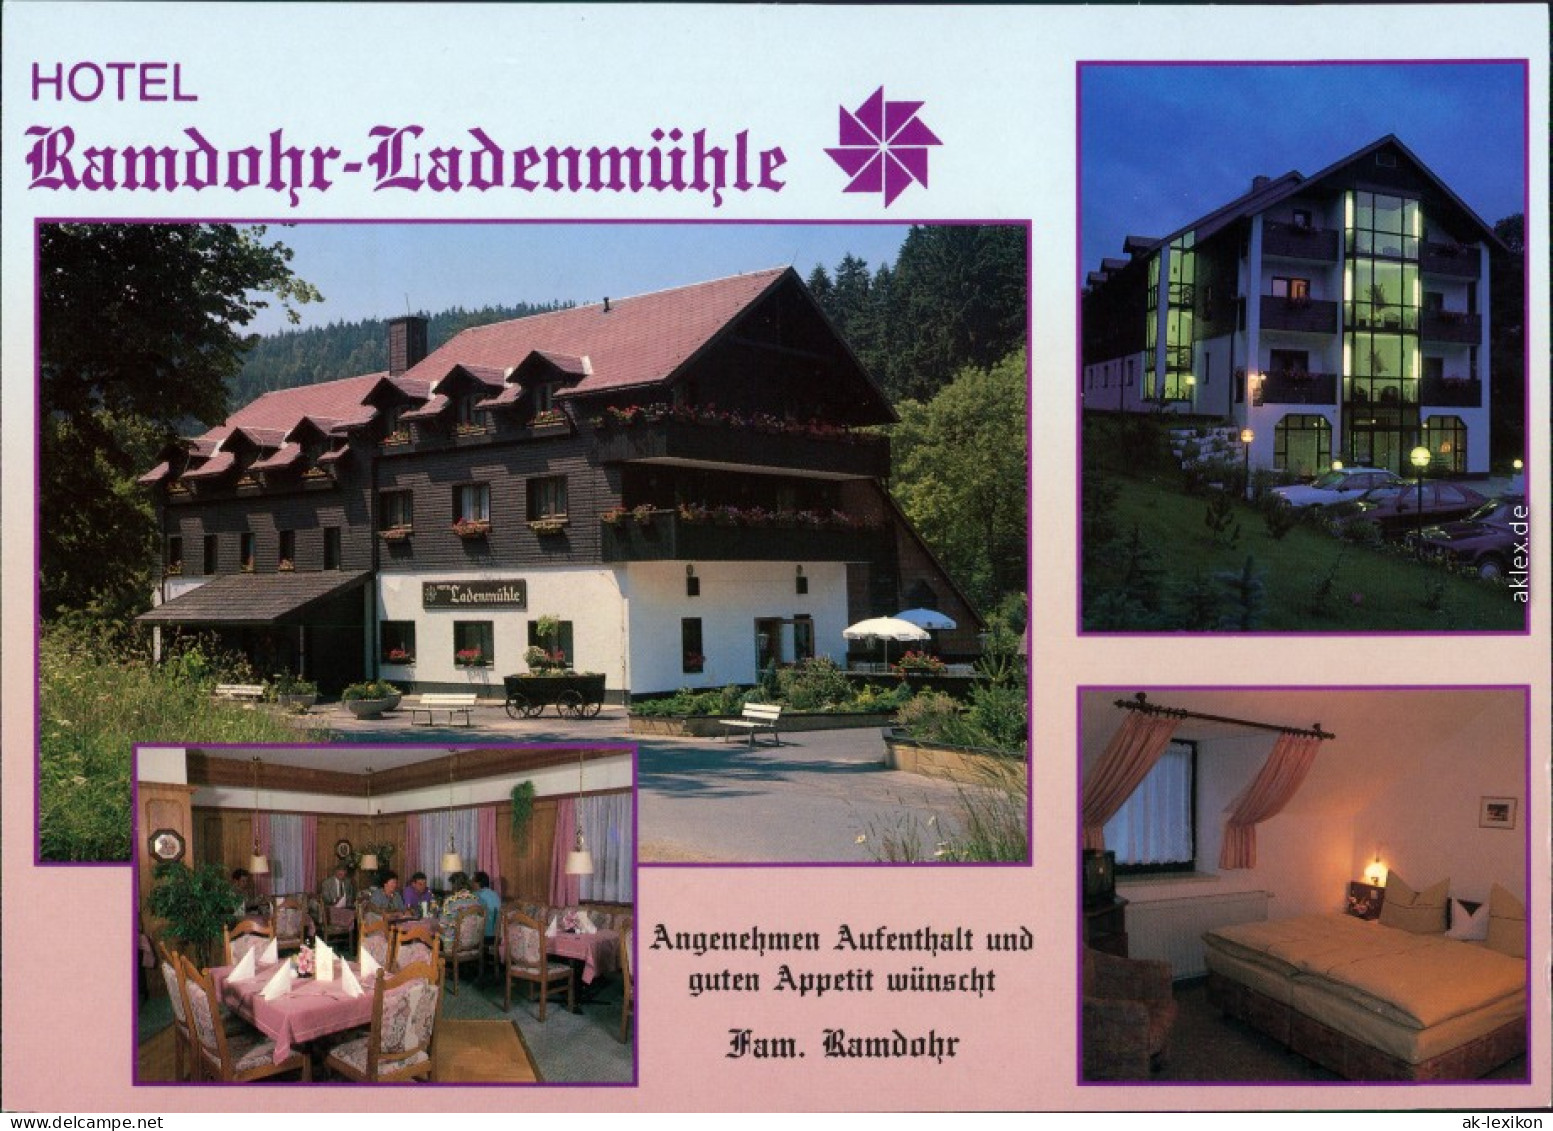 Ansichtskarte Hirschsprung-Altenberg (Erzgebirge) Ramdohr-Ladenmühle 1994 - Altenberg